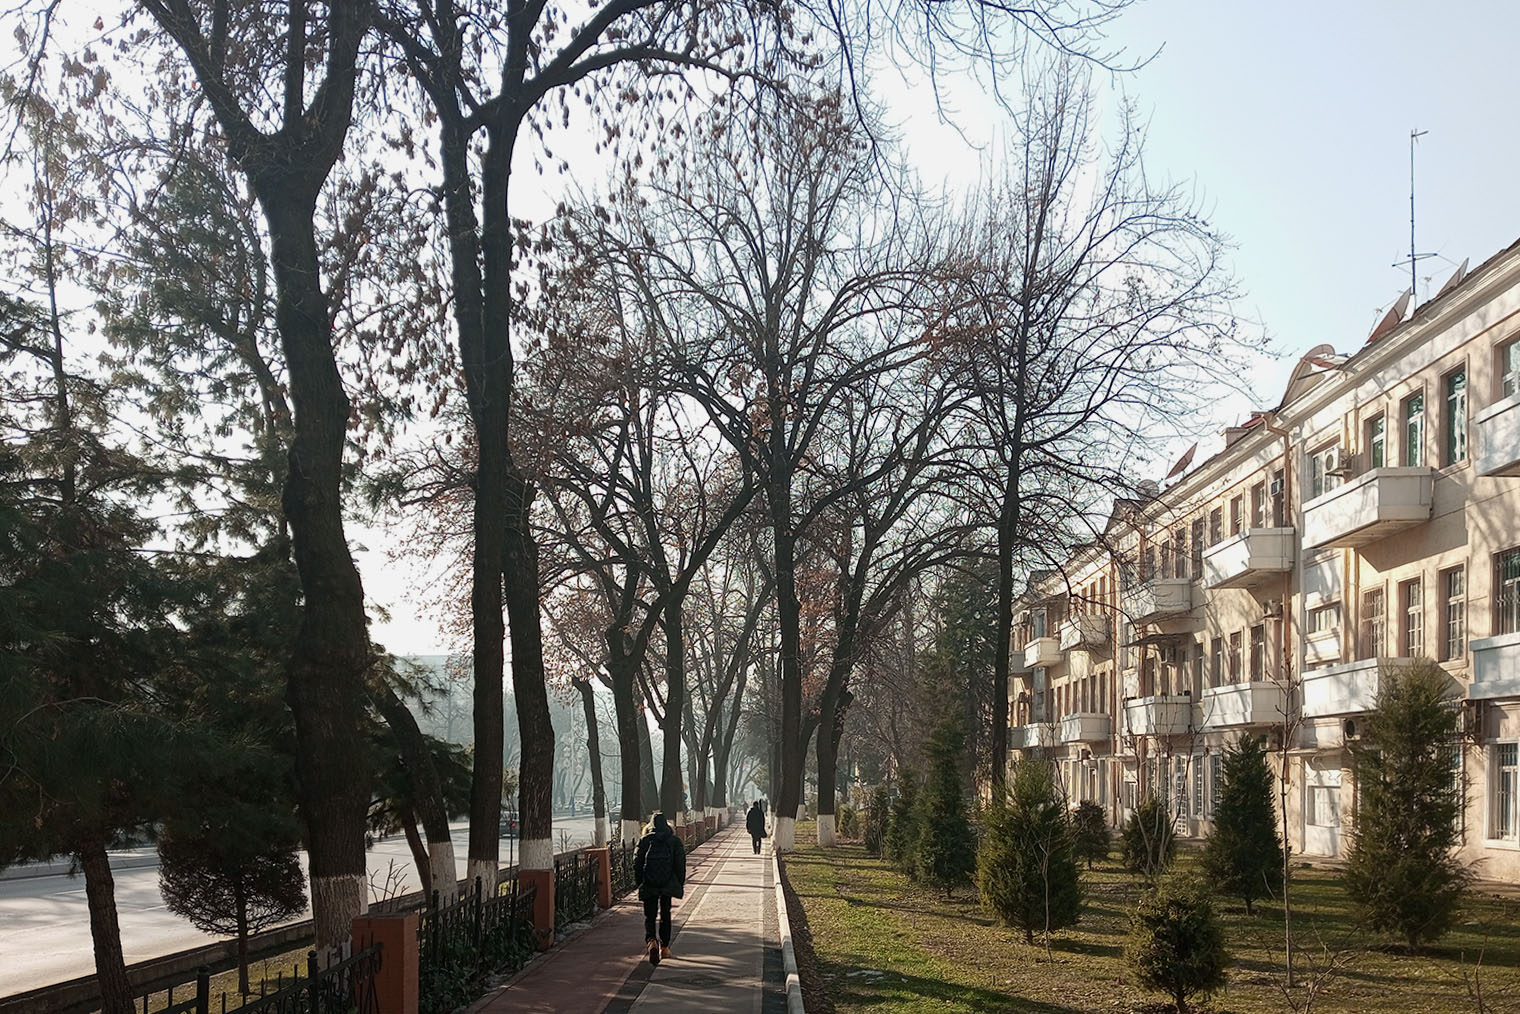 Хотя в декабре в Ташкенте солнечно, даже днем не обойтись без куртки или осеннего пальто